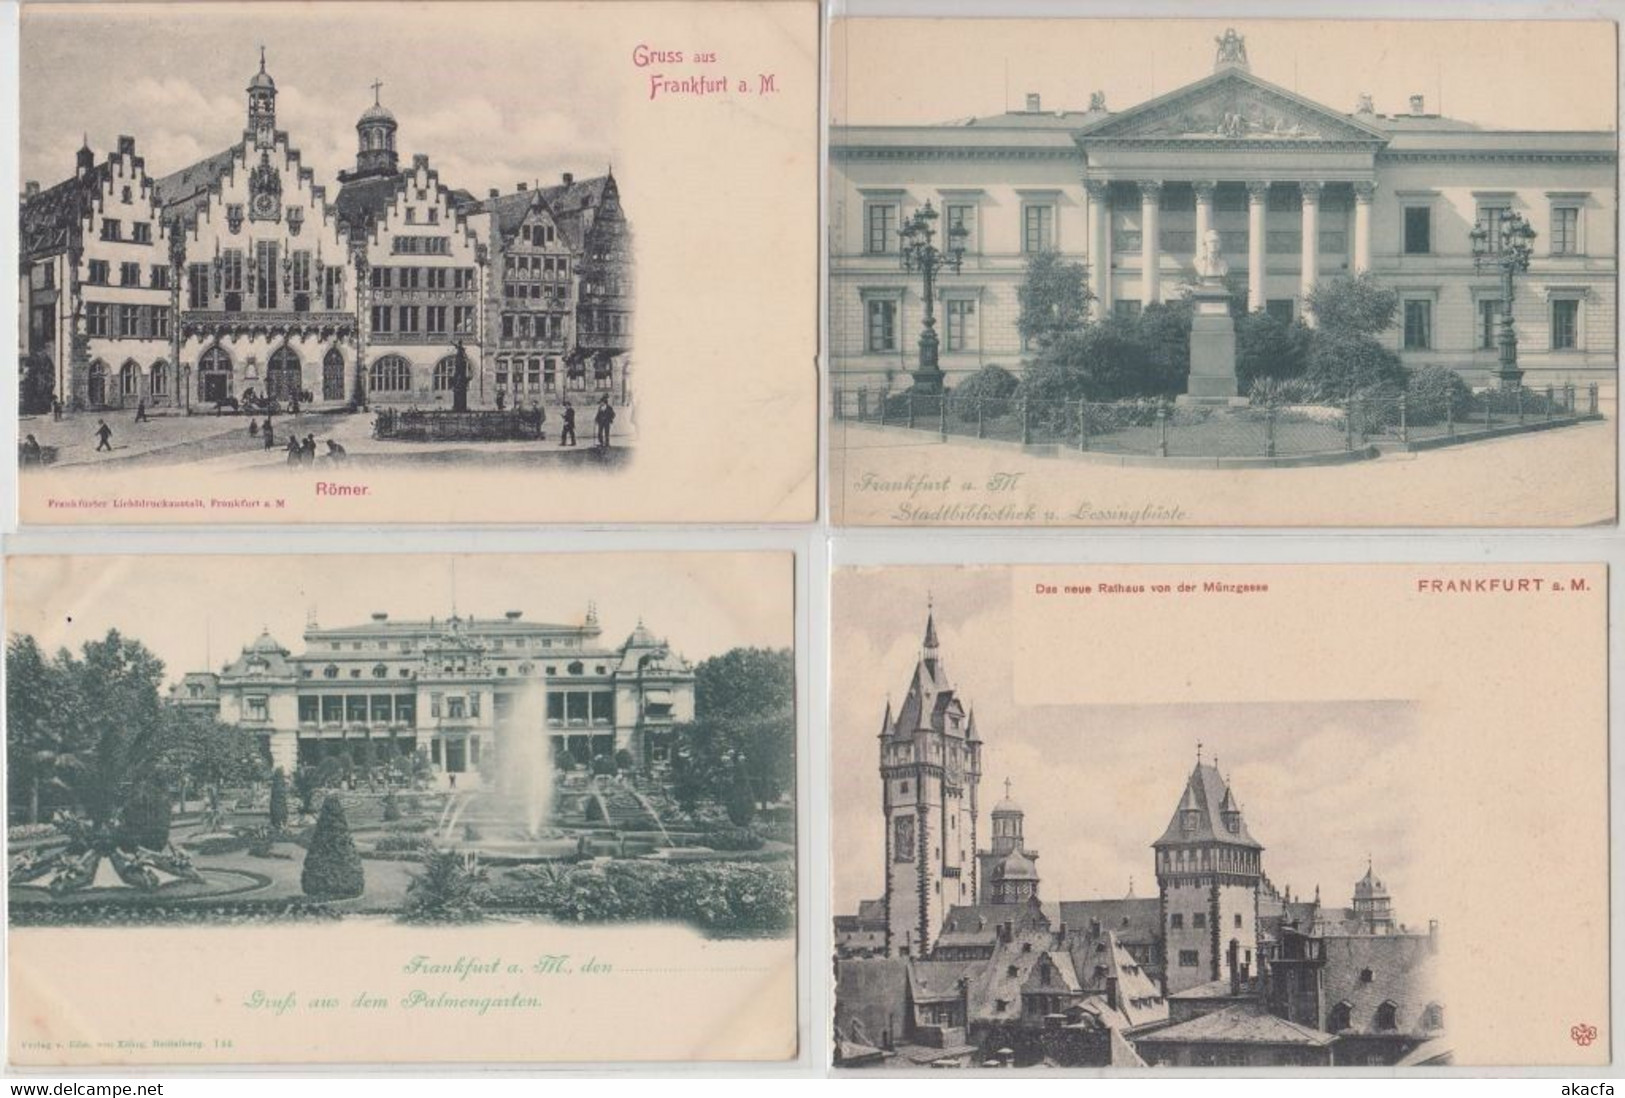 FRANKFURT Germany 53 Vintage Postcards Mostly pre-1920 (L5353)